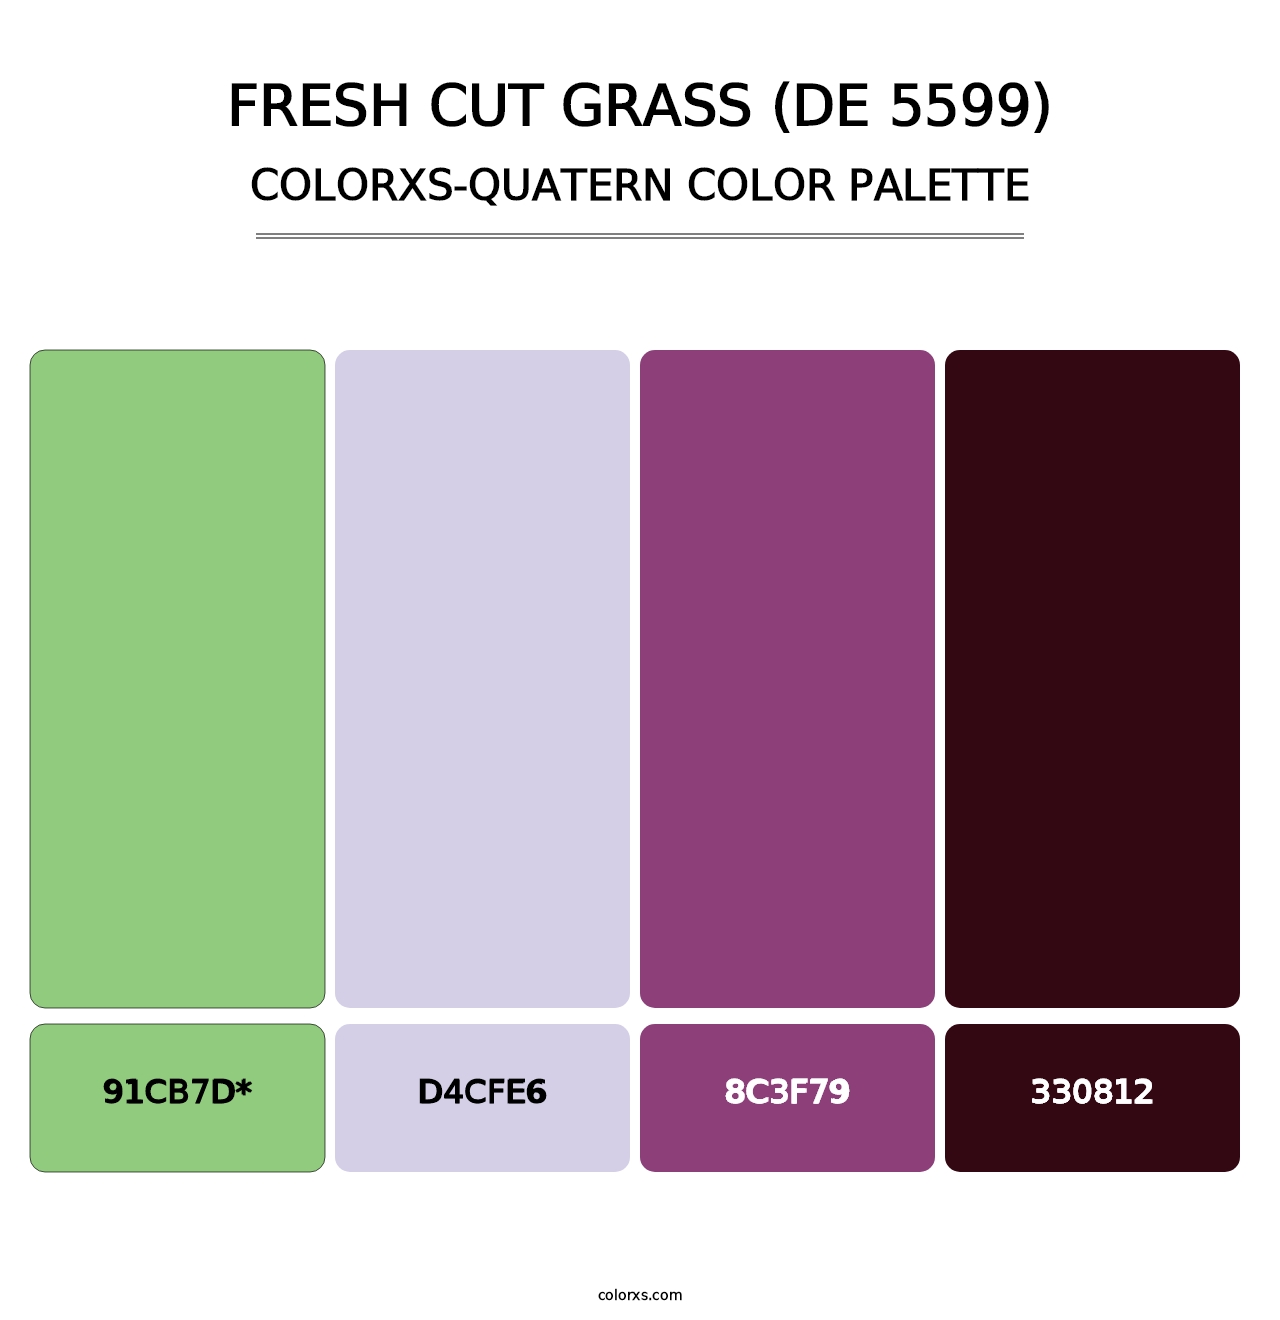 Fresh Cut Grass (DE 5599) - Colorxs Quatern Palette